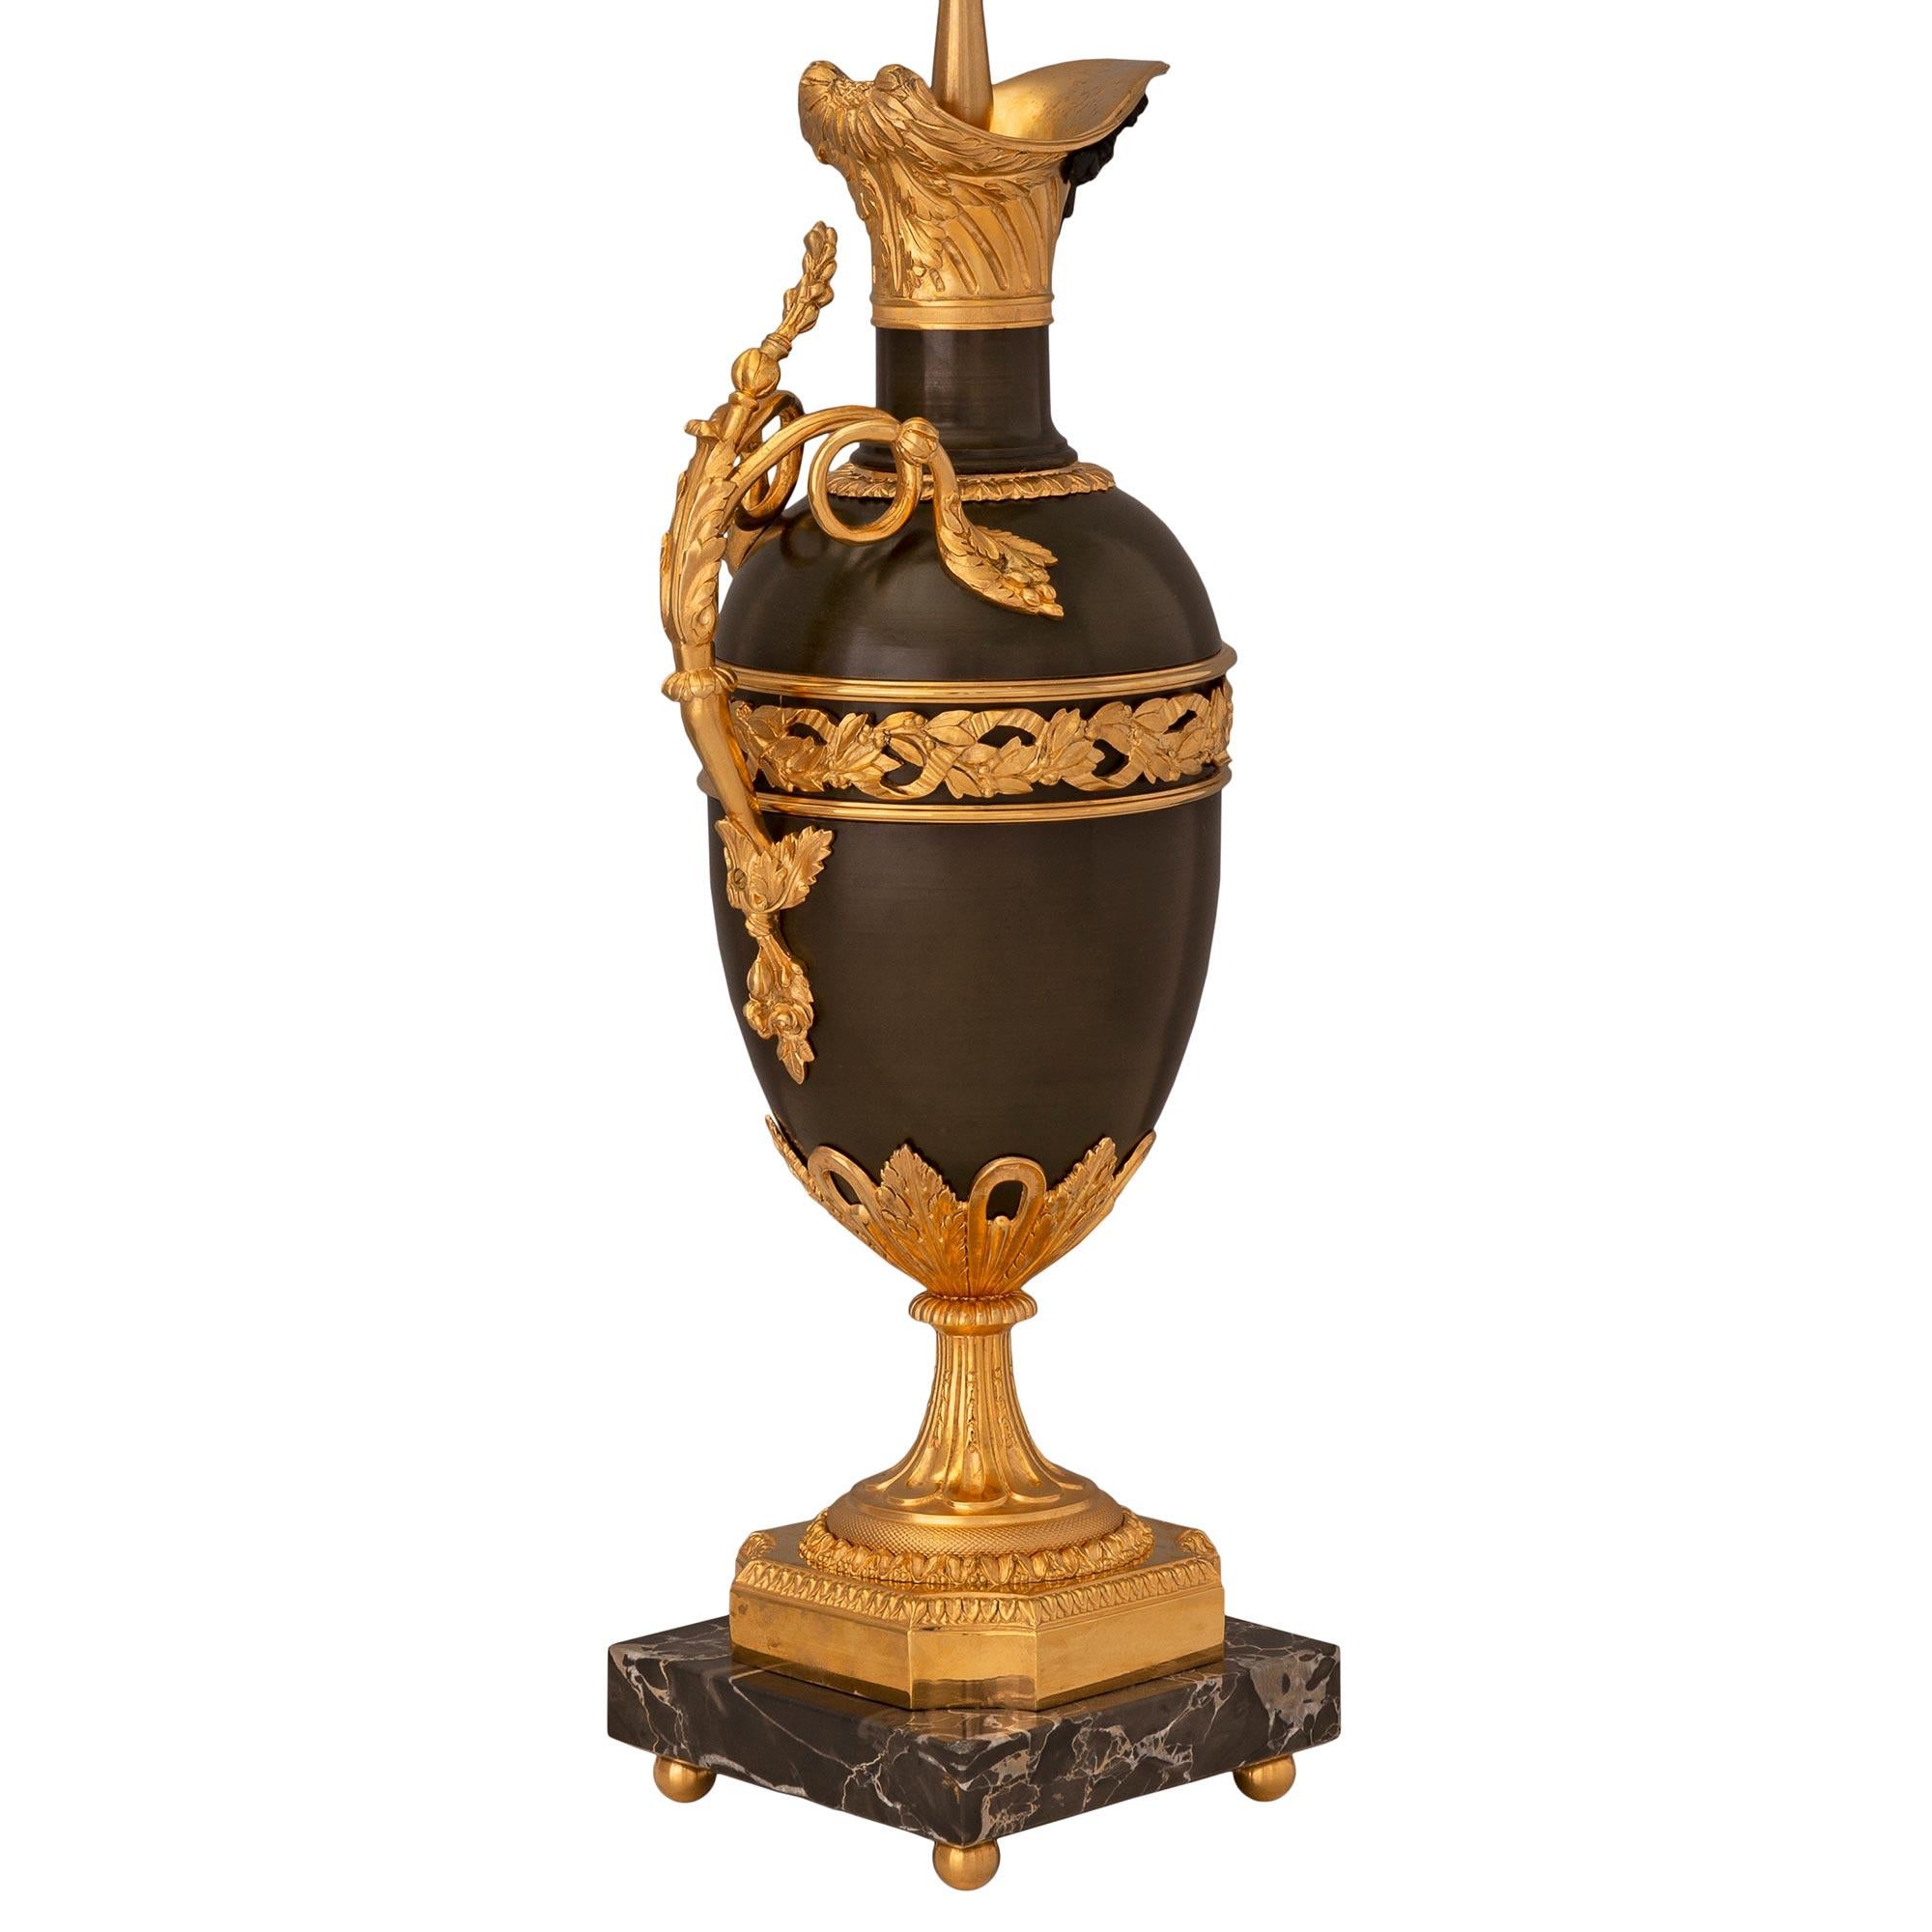 Ein äußerst elegantes und hochwertiges Paar französischer Lampen aus dem 19. Jahrhundert aus patinierter Bronze, Ormolu und Portoro-Marmor. Jede Leuchte wird von feinen Ormolu-Kugelfüßen unter den quadratischen Portoro-Marmorsockeln getragen. Die